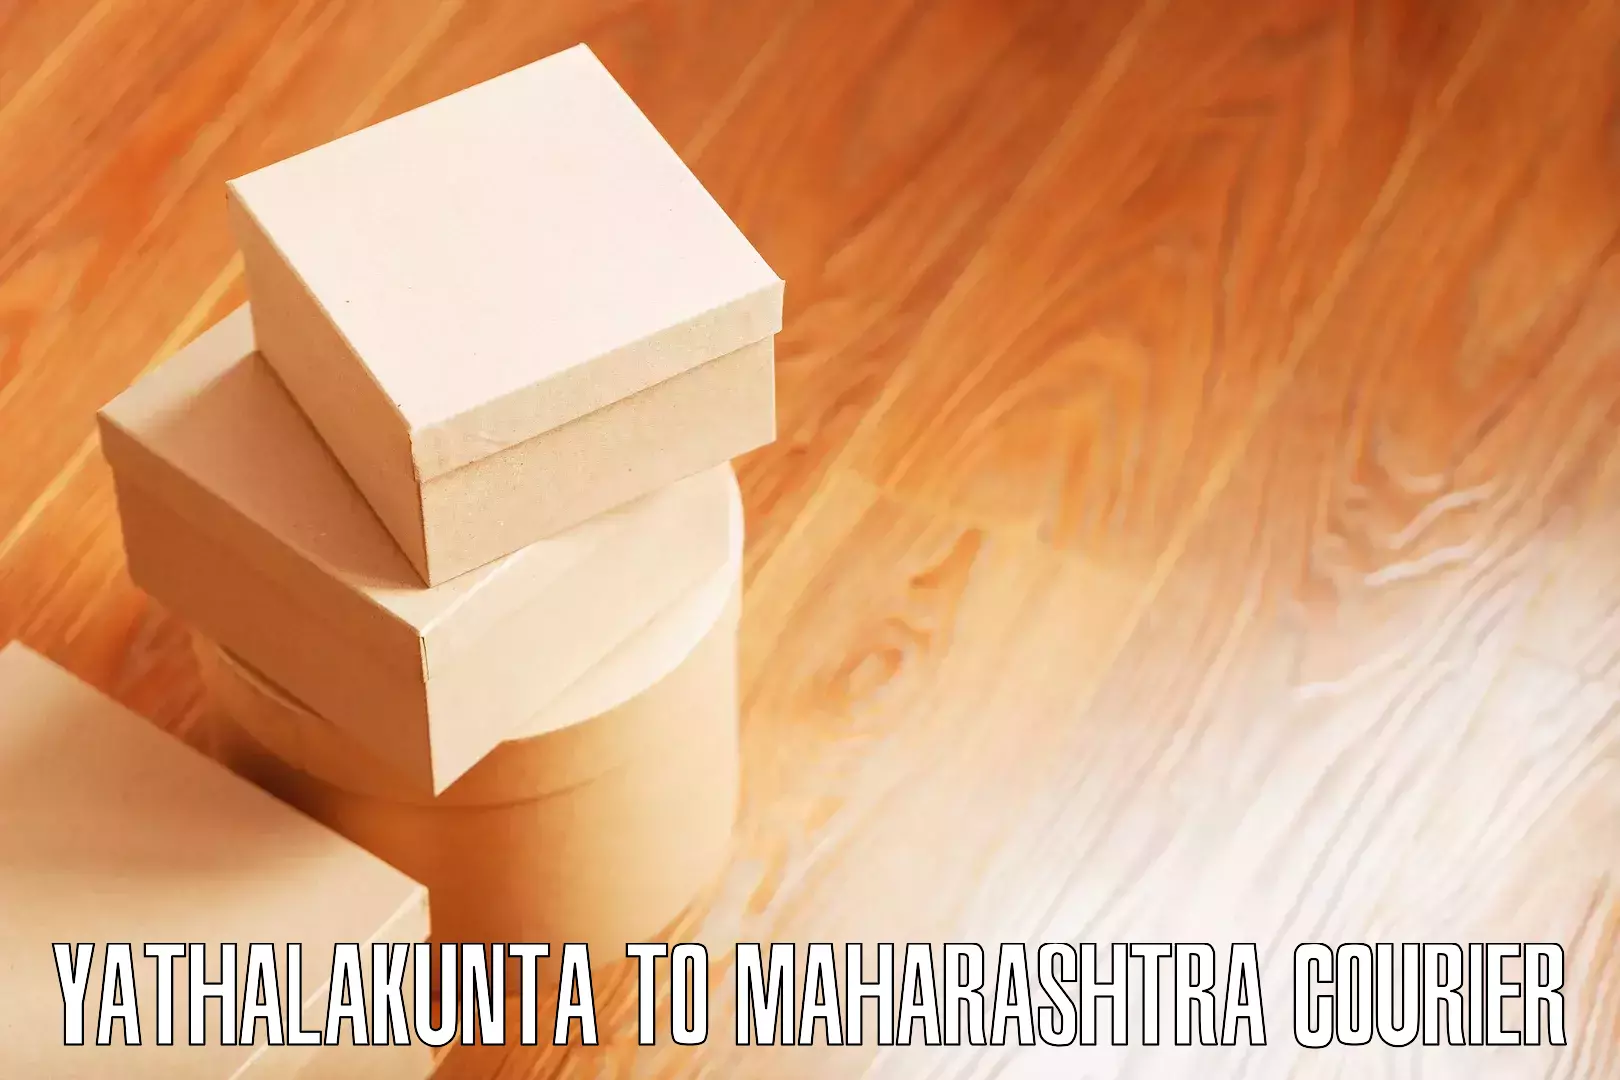 Affordable moving services Yathalakunta to Maharashtra